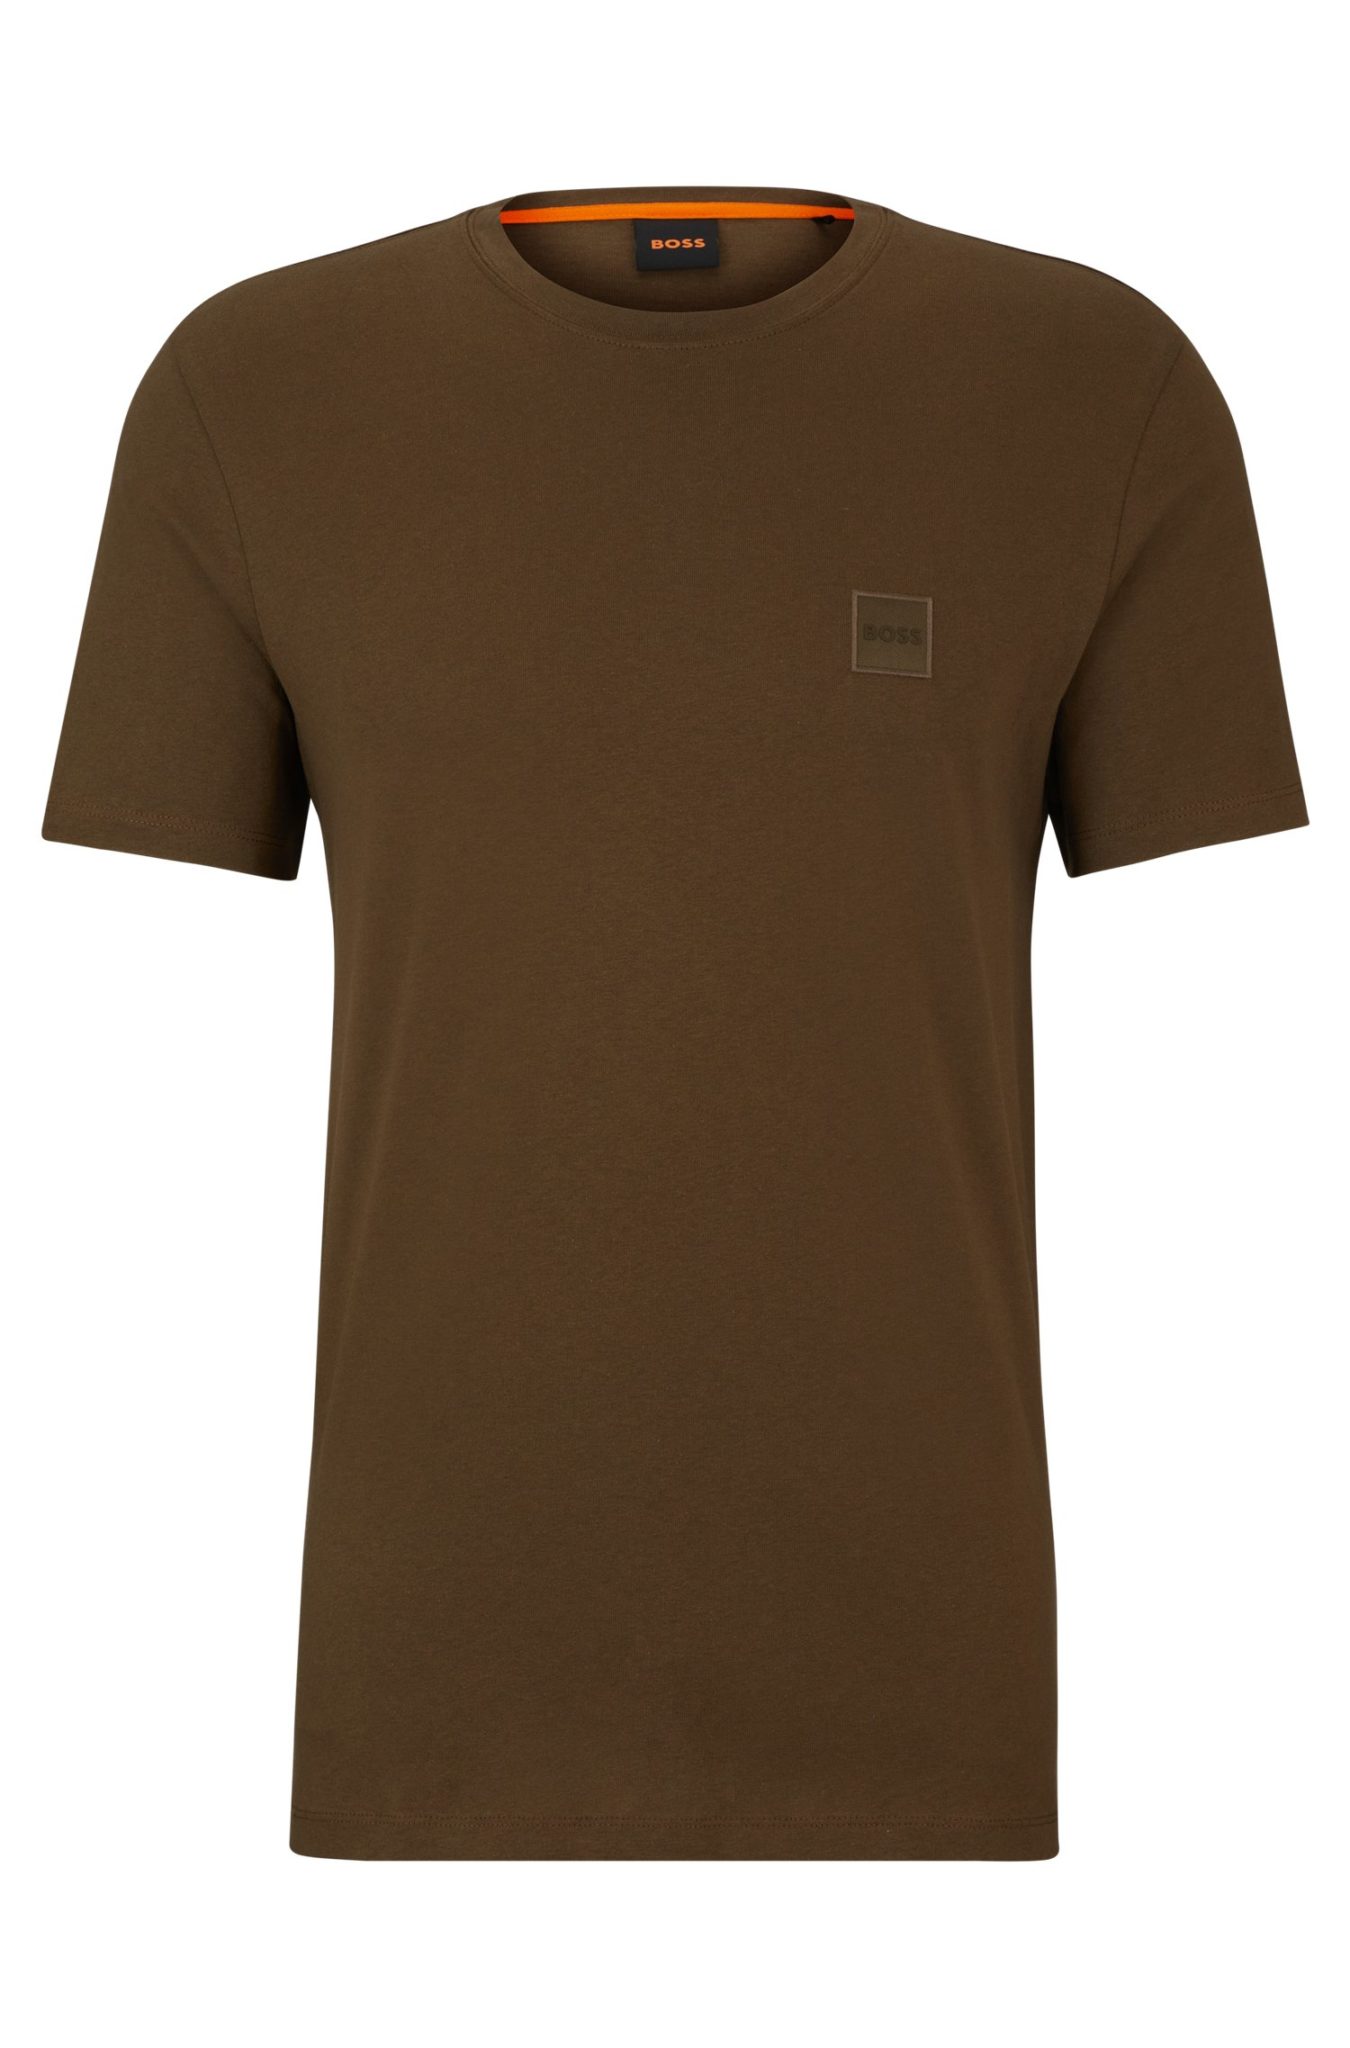 Hugo Boss T-shirt Relaxed Fit en jersey de coton avec patch logo